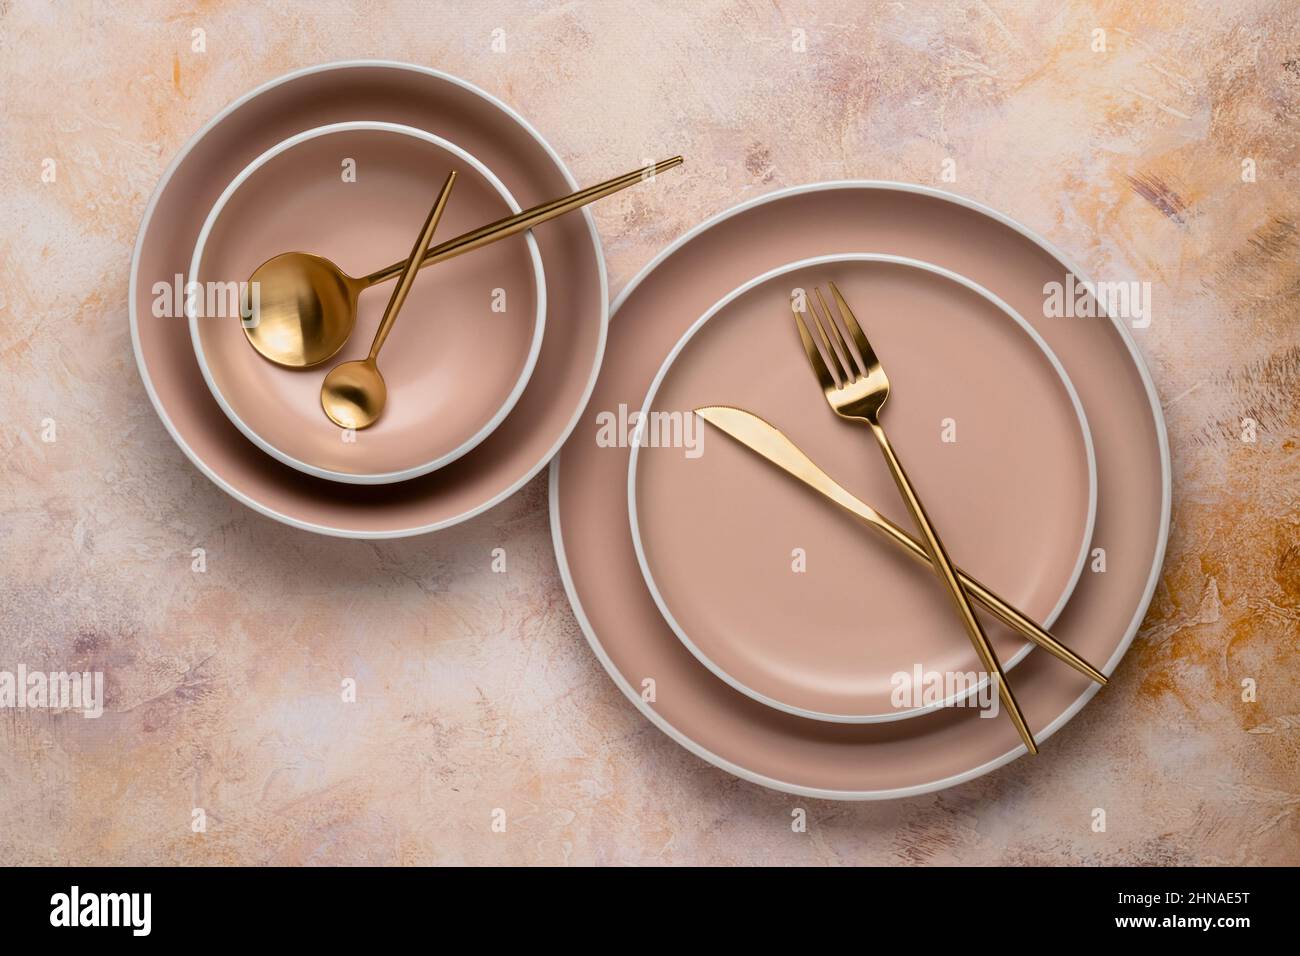 Sammlung von runden beigen Tellern in verschiedenen Größen auf dem Tisch, Draufsicht. Goldenes Besteck und Geschirr zum Servieren und Essen. Modernes Handwerk Keramik t Stockfoto